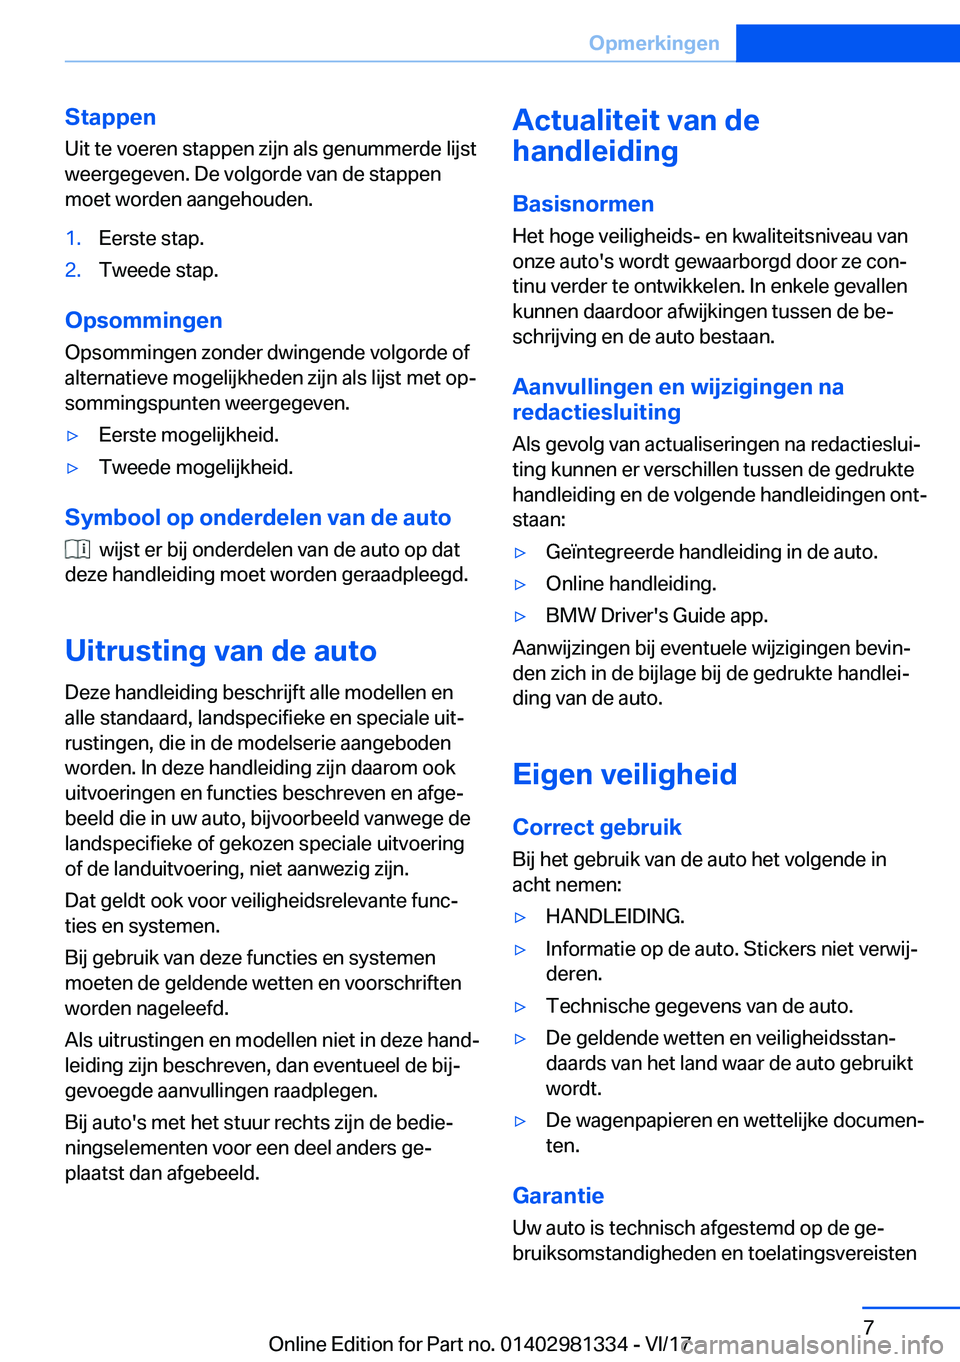 BMW X4 2018  Instructieboekjes (in Dutch) �S�t�a�p�p�e�n
�U�i�t� �t�e� �v�o�e�r�e�n� �s�t�a�p�p�e�n� �z�i�j�n� �a�l�s� �g�e�n�u�m�m�e�r�d�e� �l�i�j�s�t �w�e�e�r�g�e�g�e�v�e�n�.� �D�e� �v�o�l�g�o�r�d�e� �v�a�n� �d�e� �s�t�a�p�p�e�n�m�o�e�t� �w